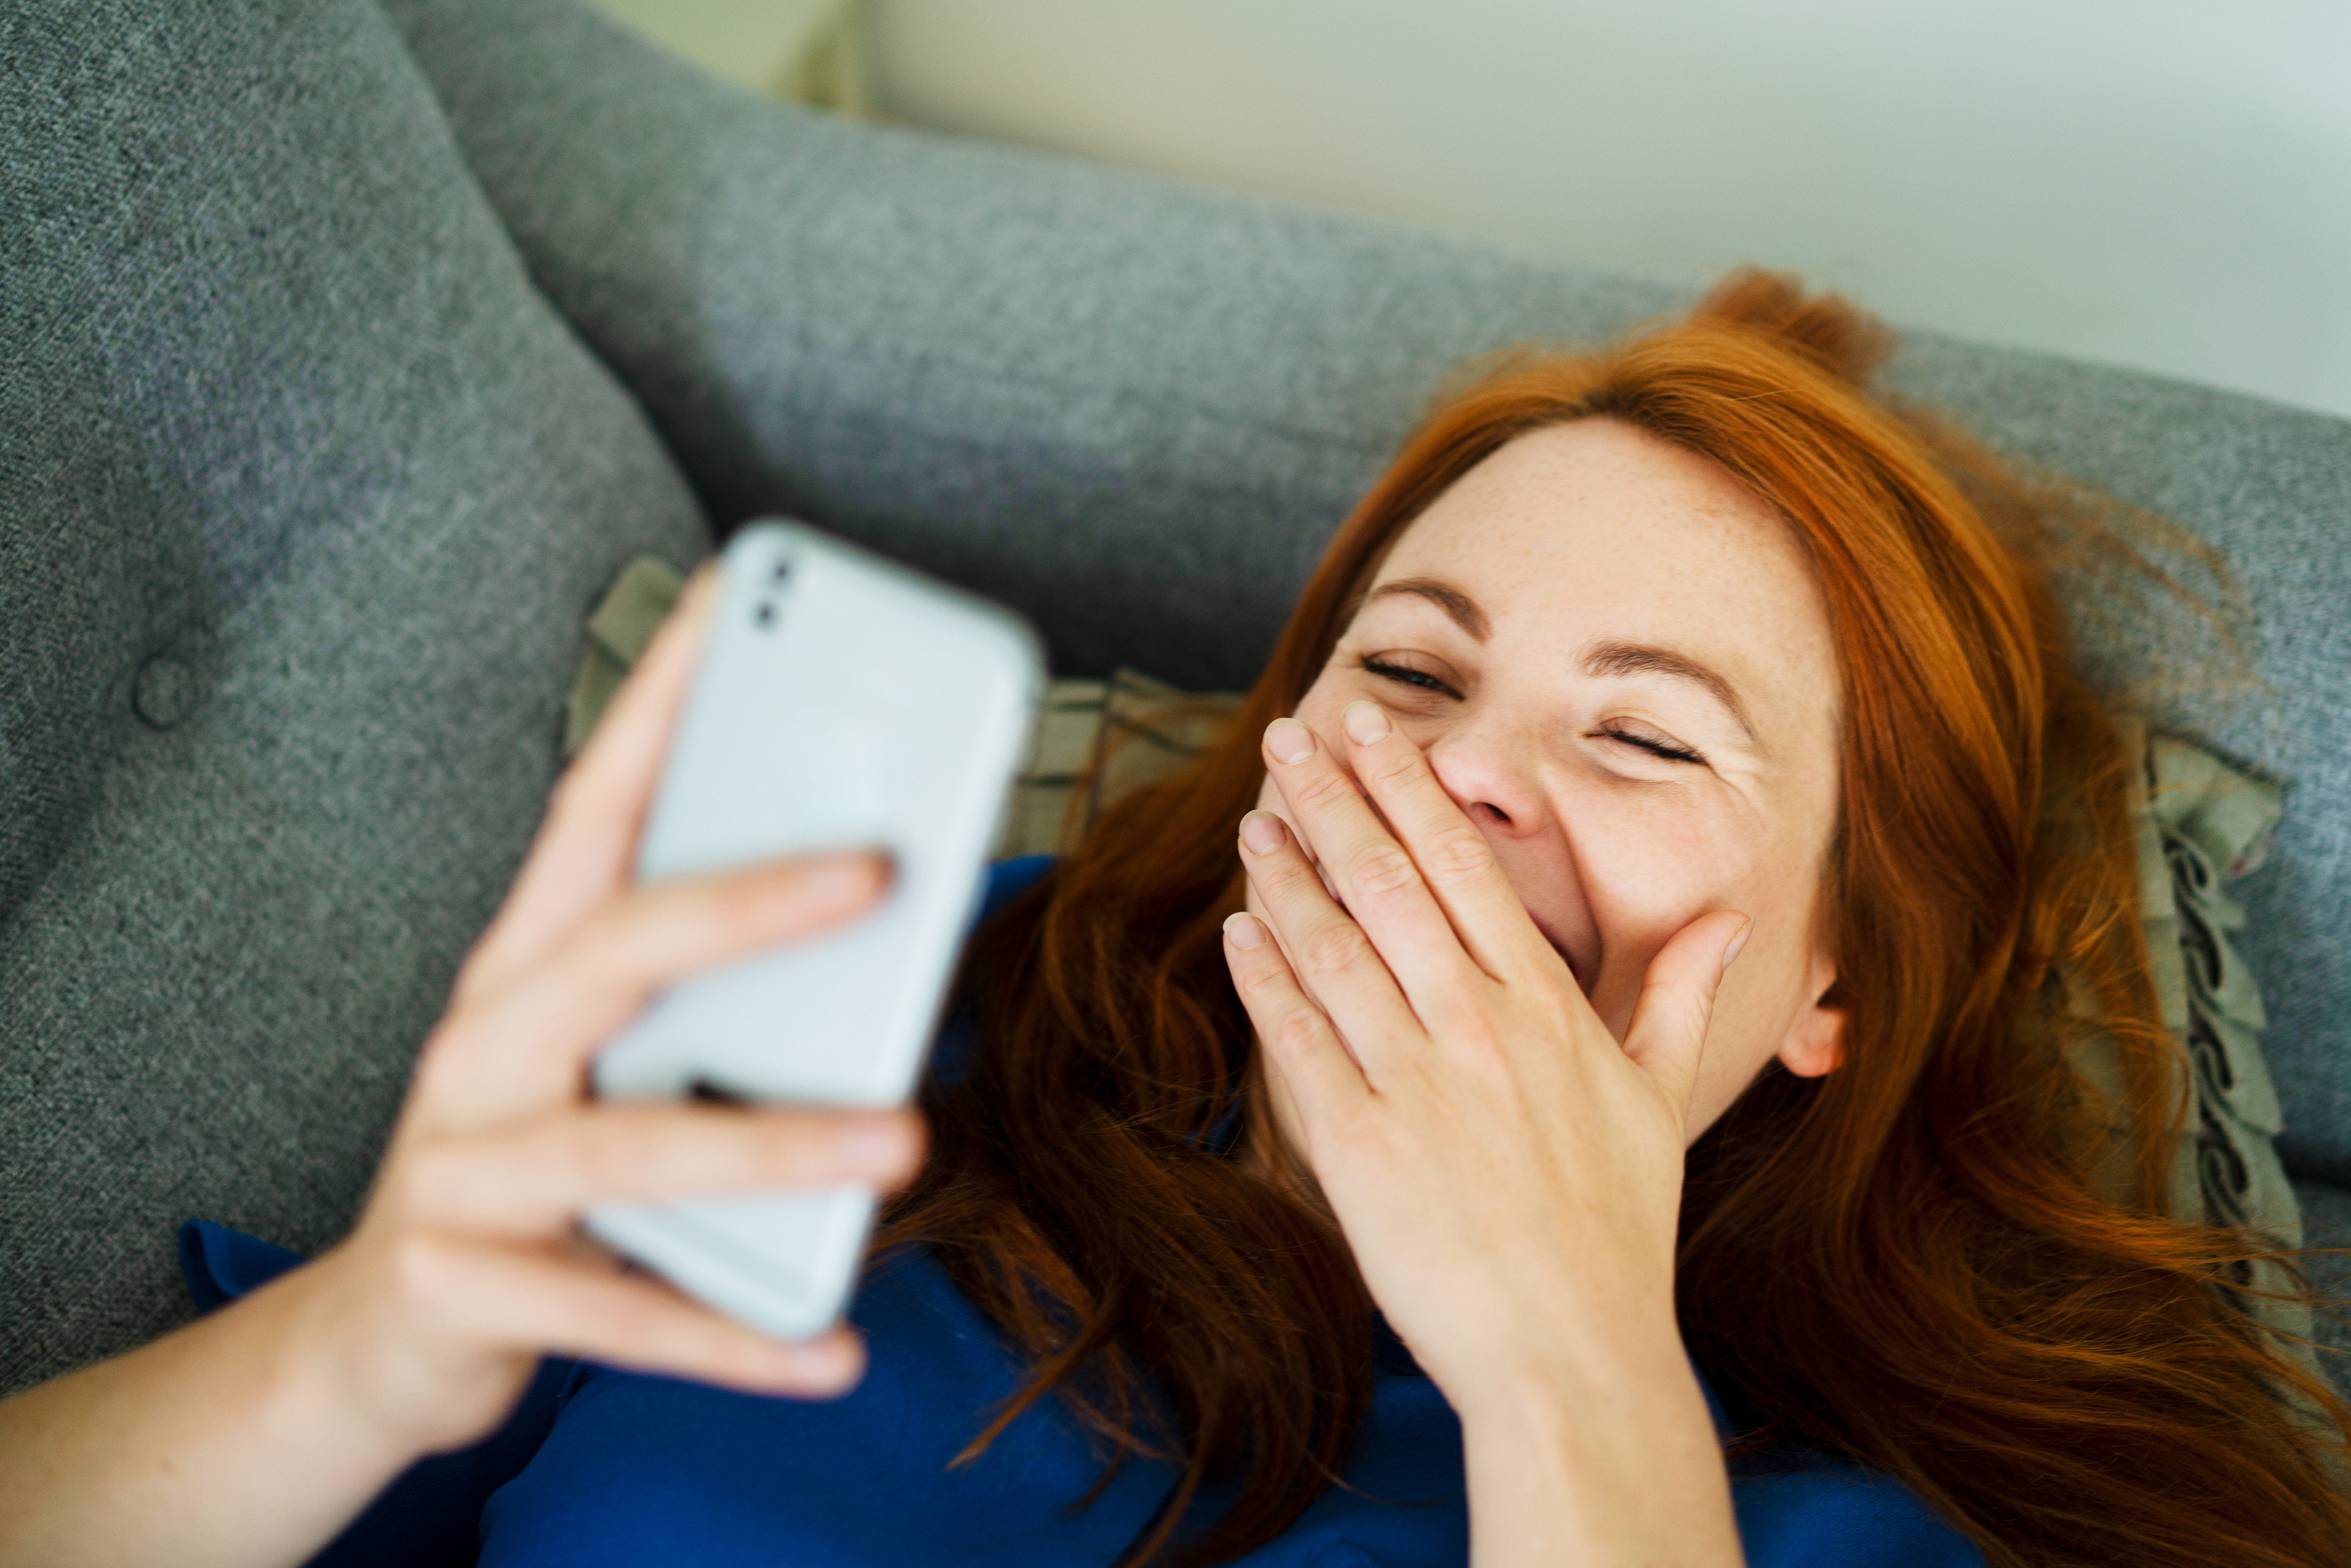 Une femme qui rit devant son téléphone alors qu'elle est allongée sur le canapé | Source : Getty Images